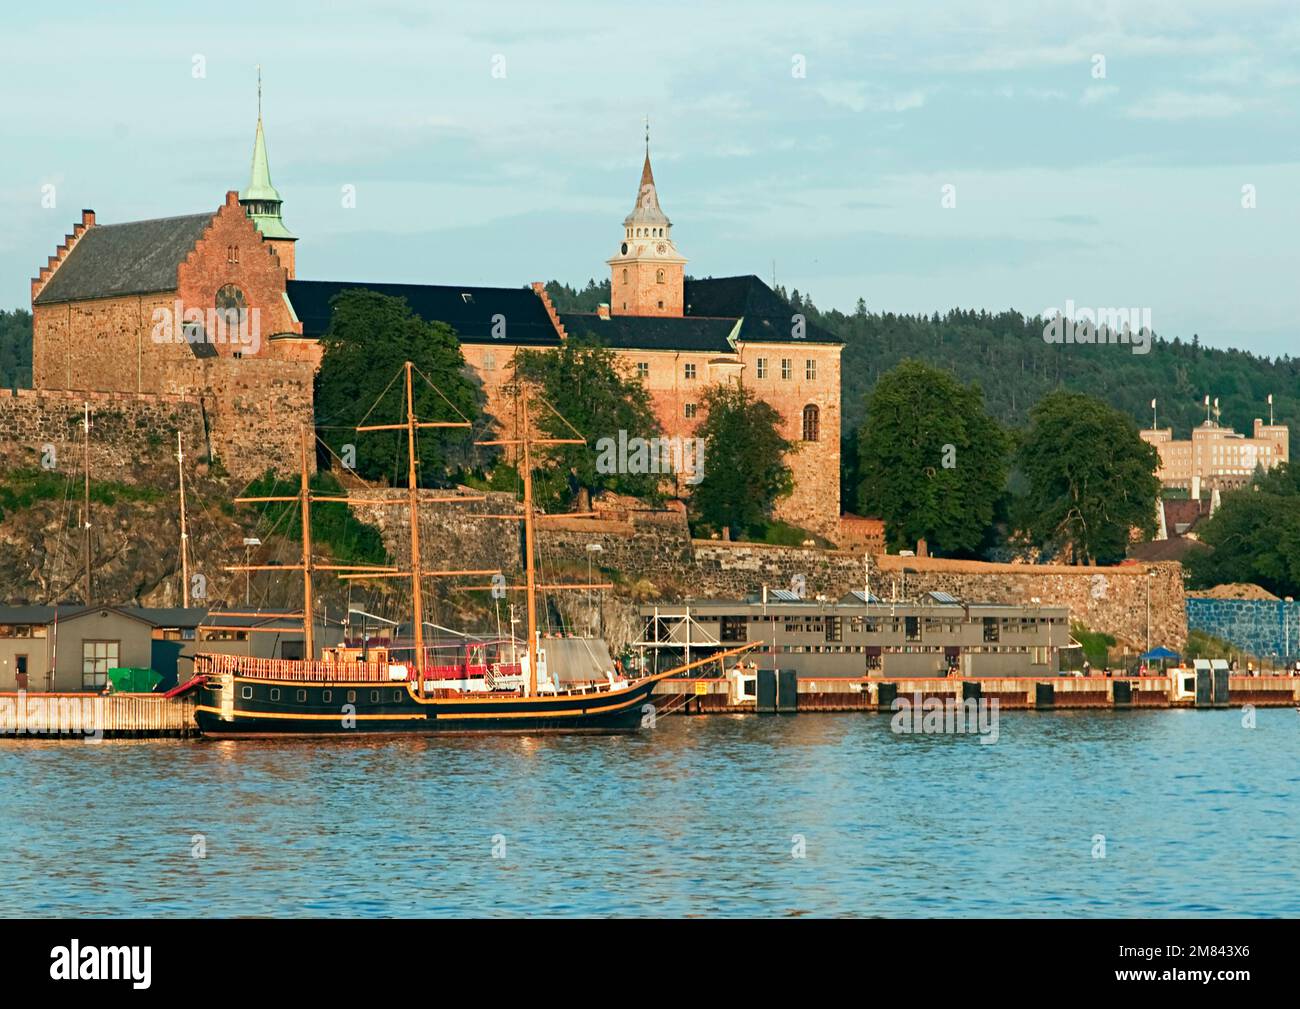 Panoramablick auf die mittelalterliche Festung Akershus - Akershus Festning - historische königliche Residenz am Ufer von Oslofjorden Stockfoto